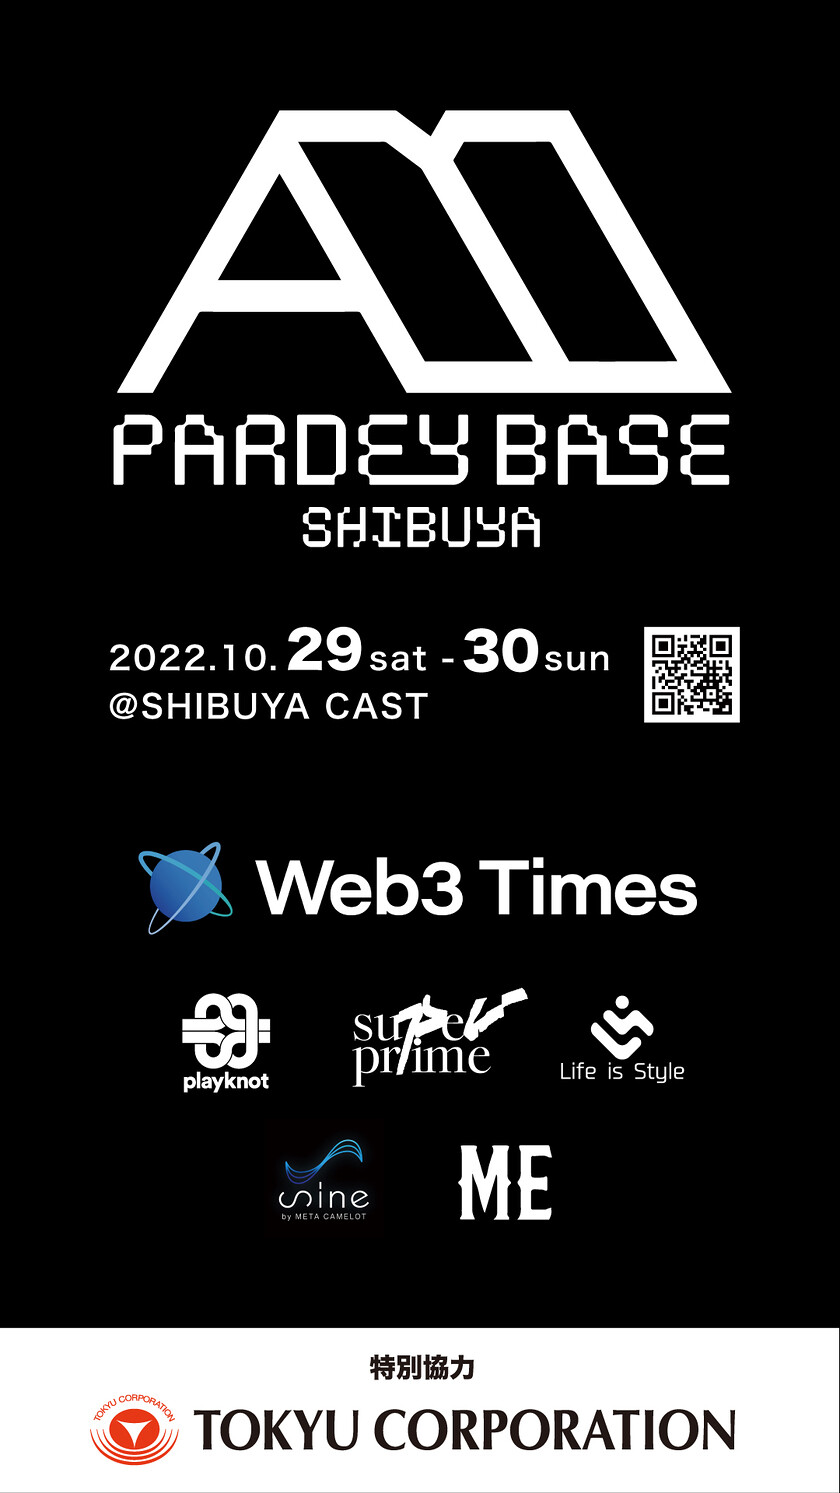 PARDEY BASE SHIBUYA -NFT展示2.0-